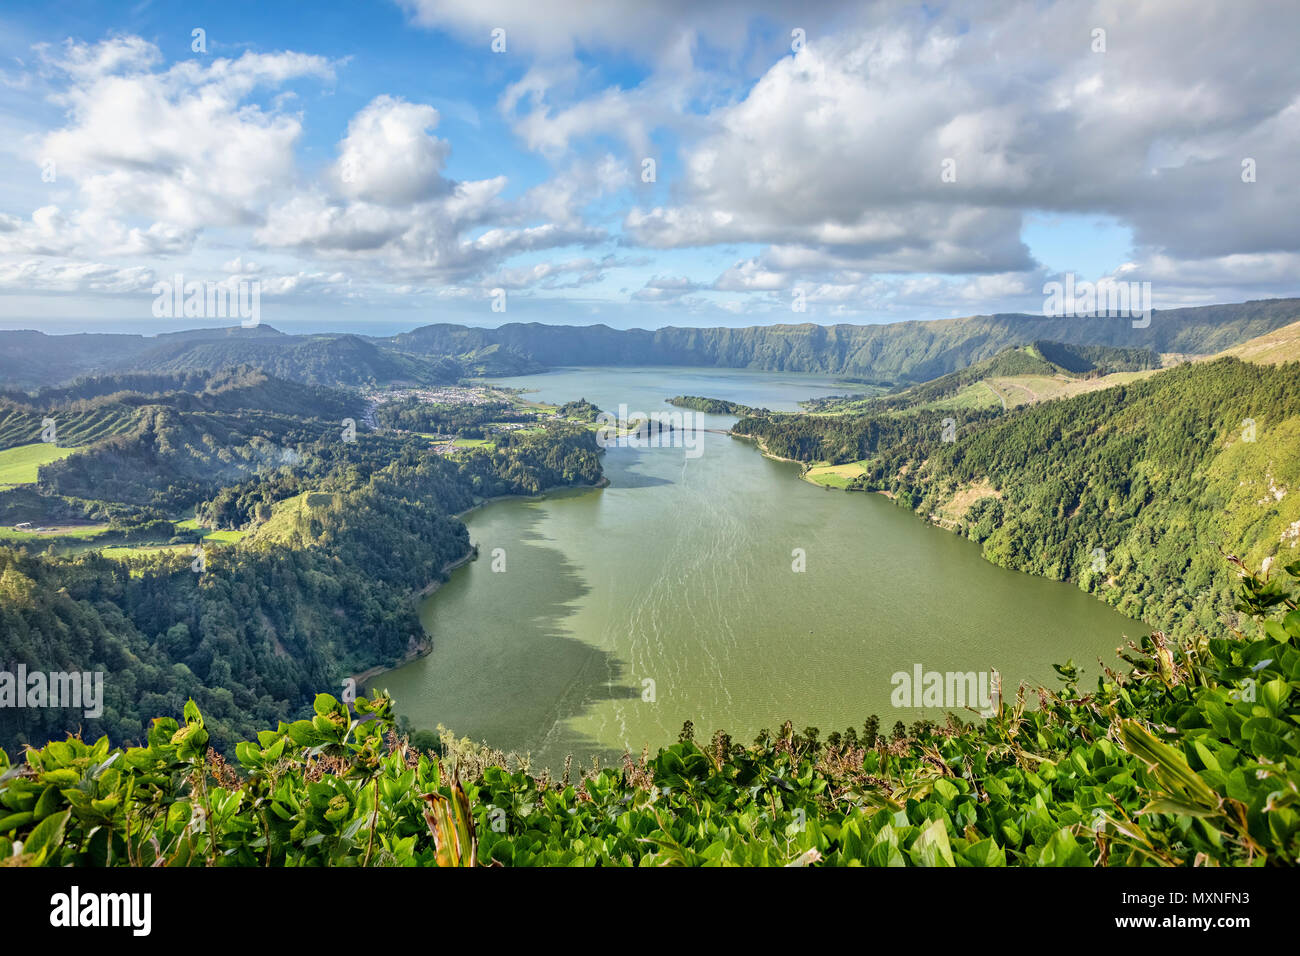 Sete Cidades - una twin lago situato nel cratere di un vulcano dormiente, isola Sao Miguel, Azzorre, Portogallo Foto Stock